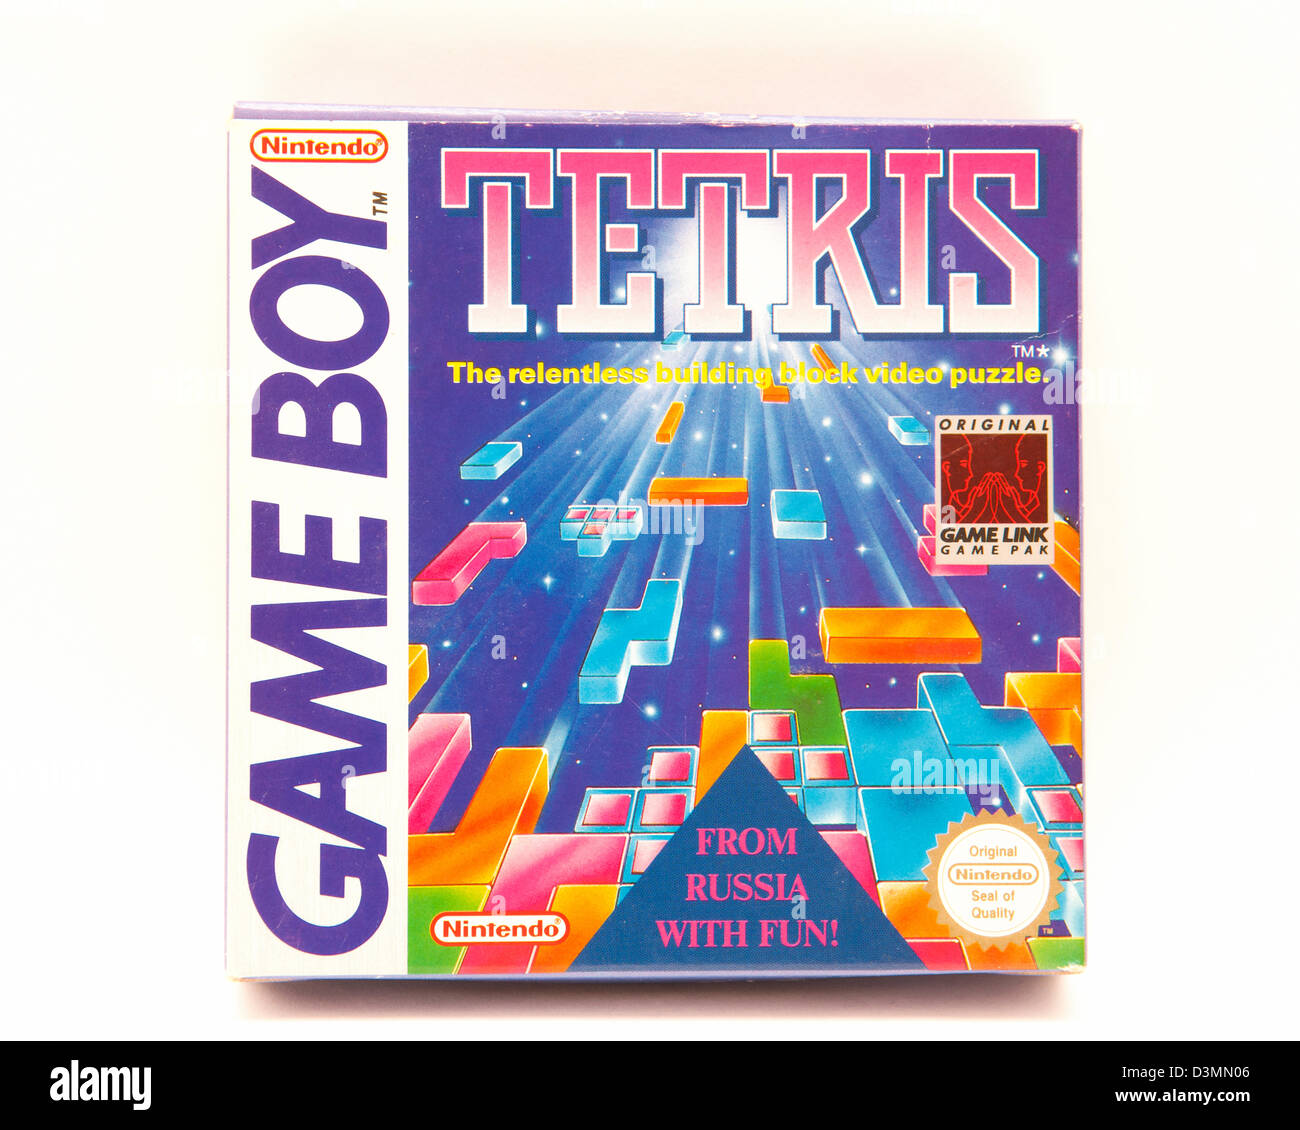 Nintendo Game Boy Tetris game box Stock Photo